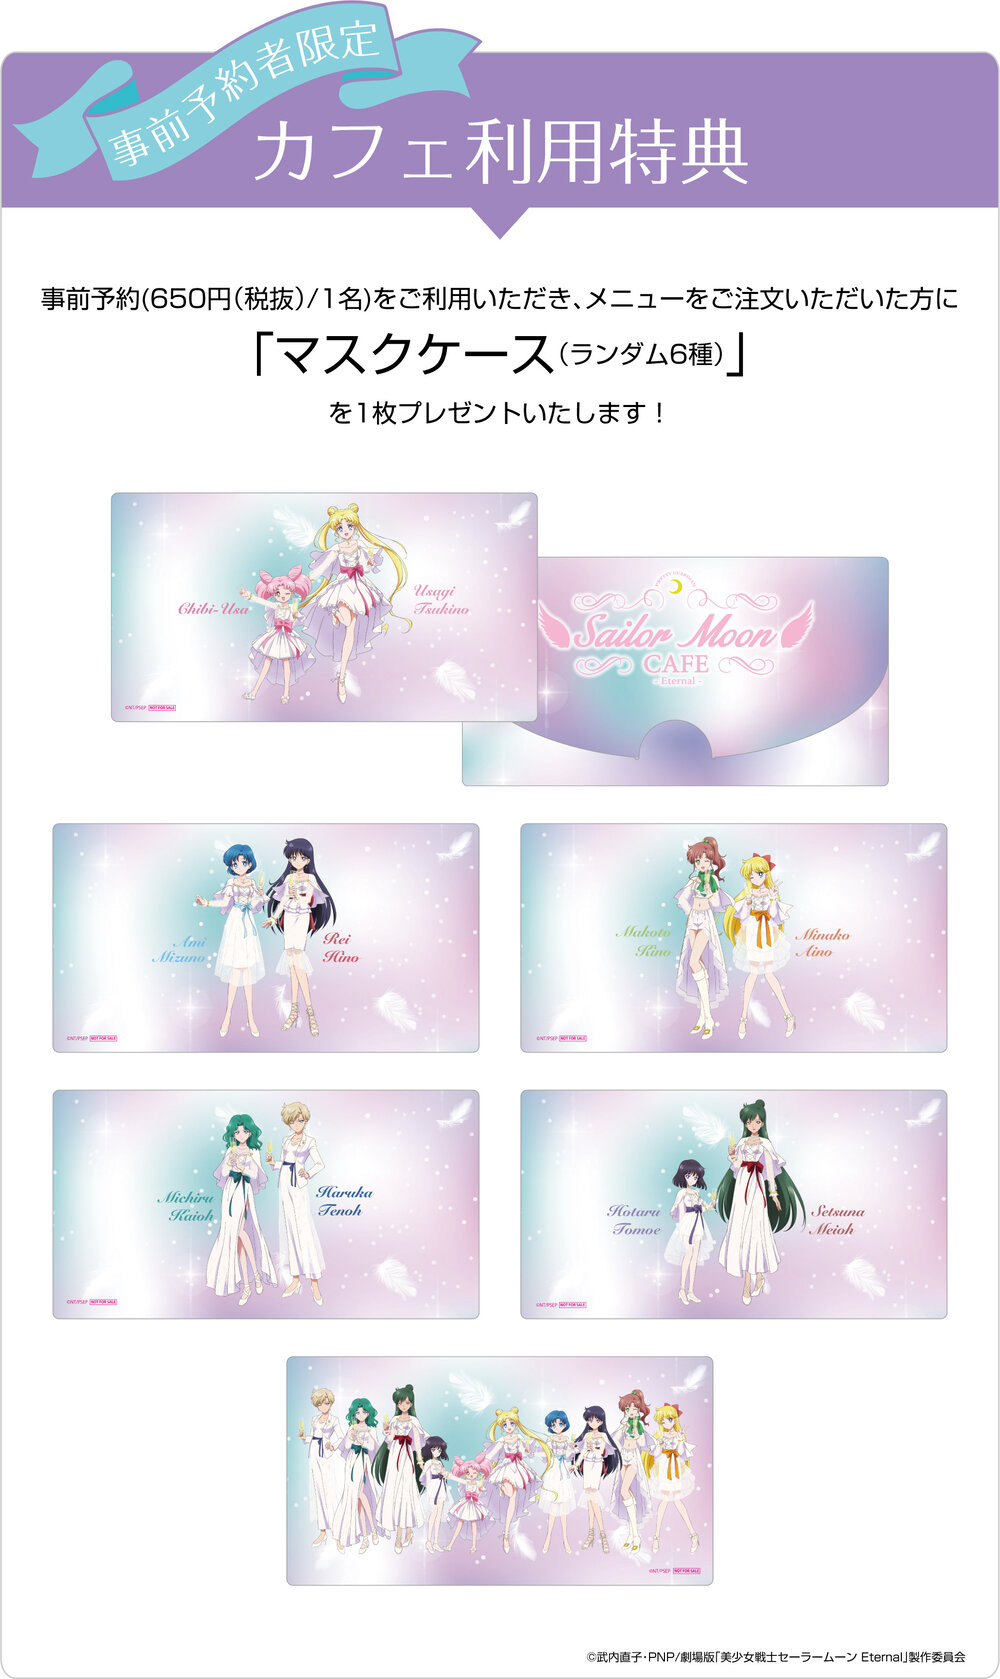 Sailor Moon Cafe Eternal December 24 March 14 21 Dango News